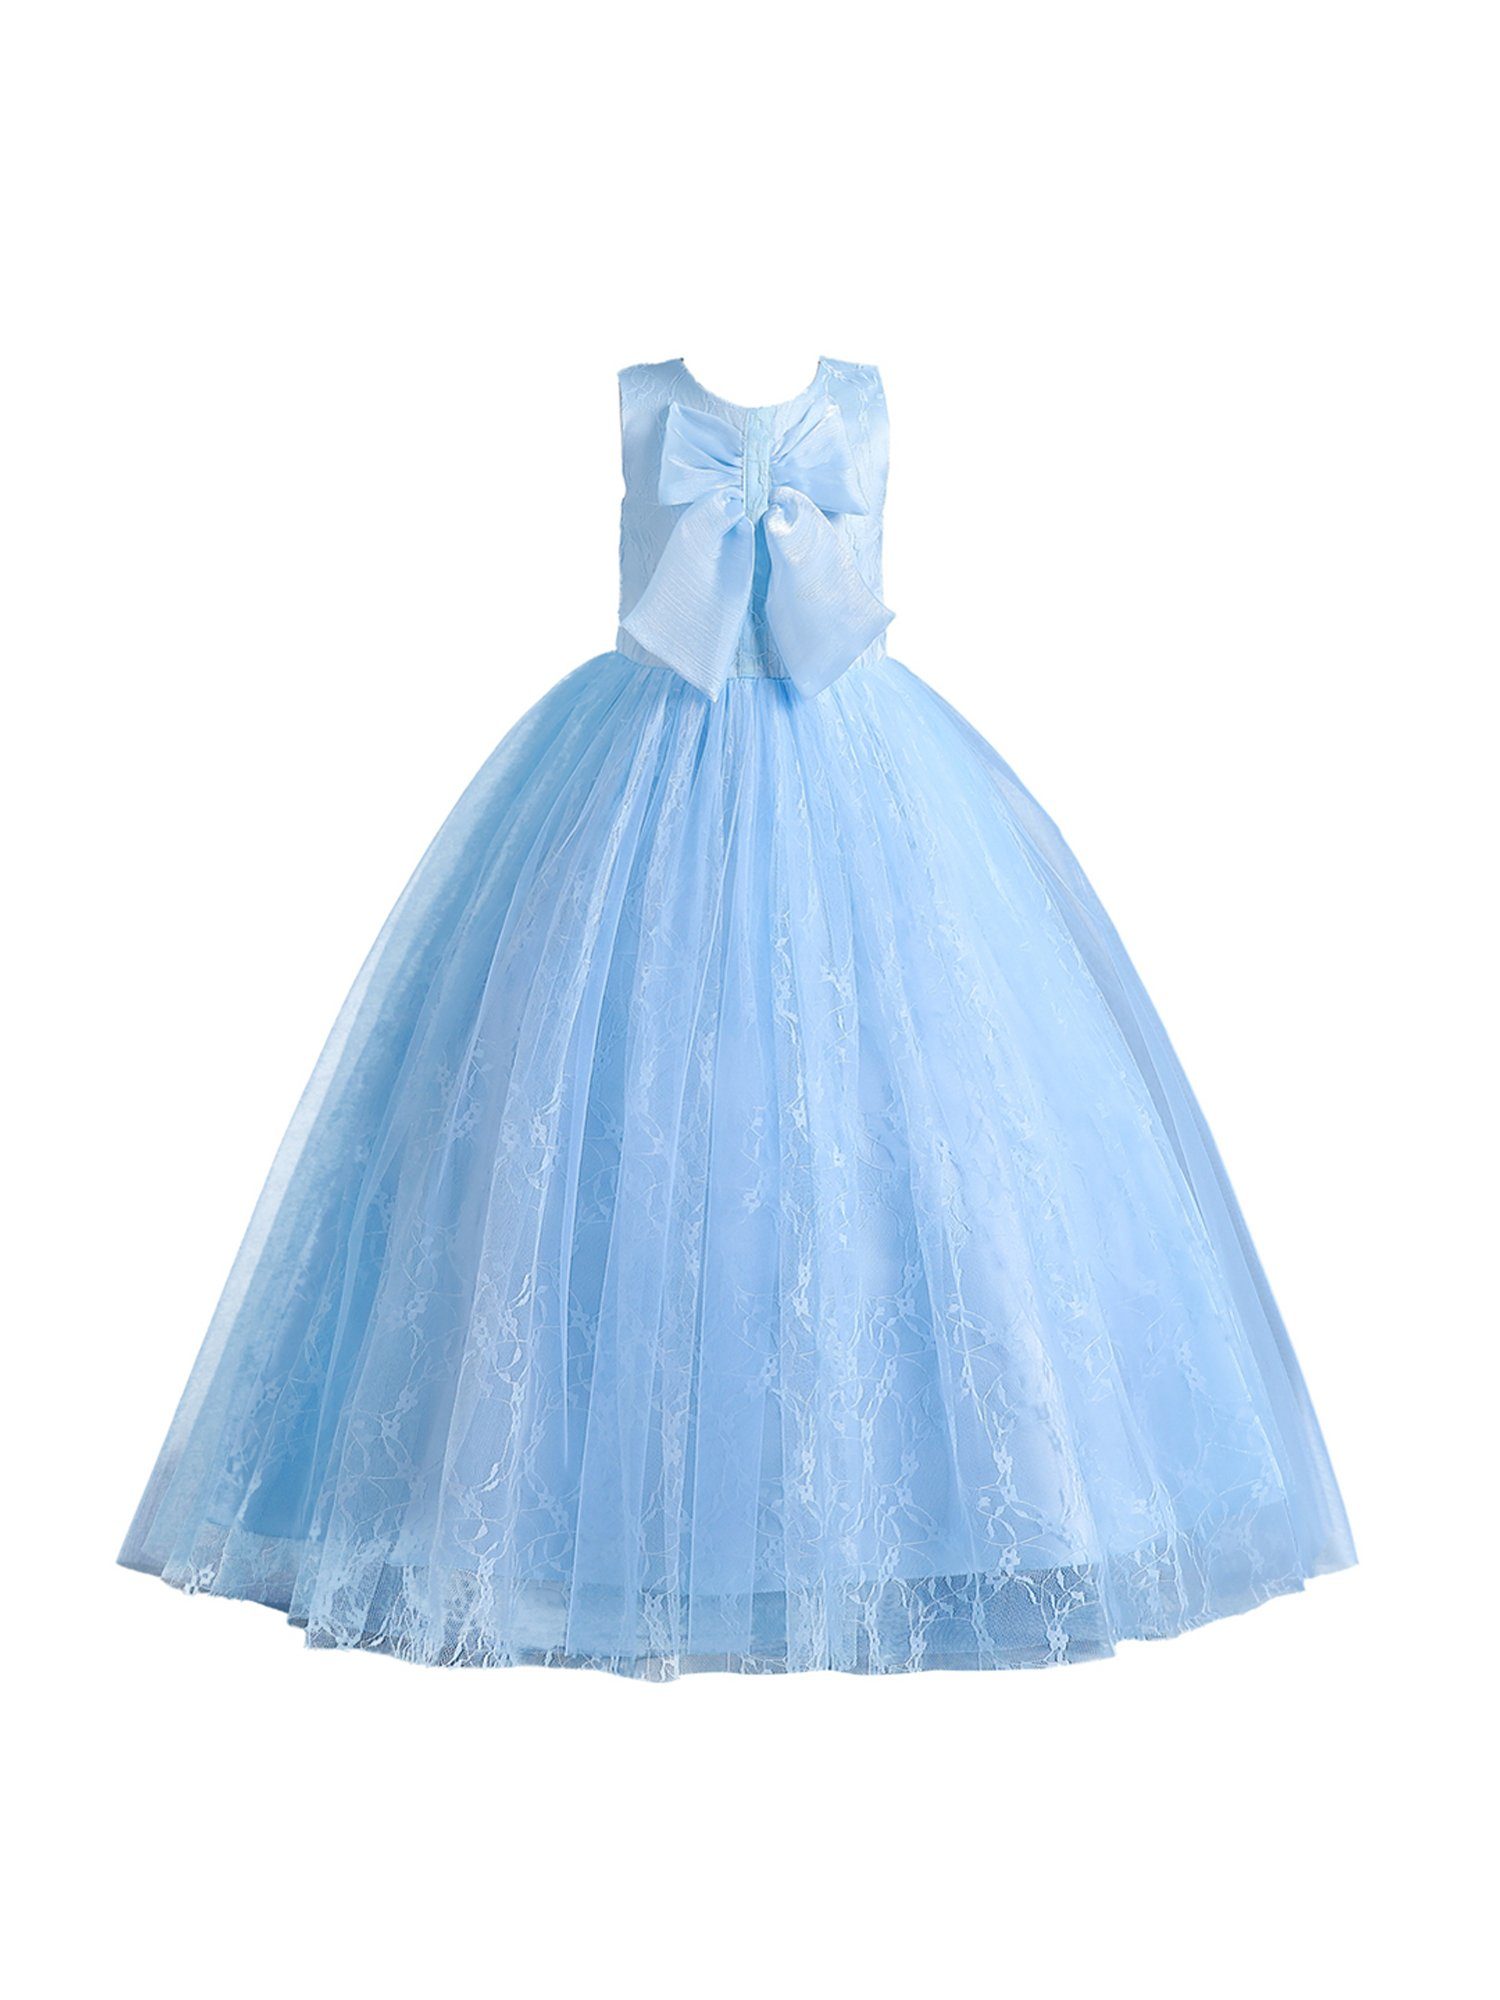 LAPA Abendkleid Mädchen Kleid mit Blau Bodenlanges Einfacher Spitze Partykleid